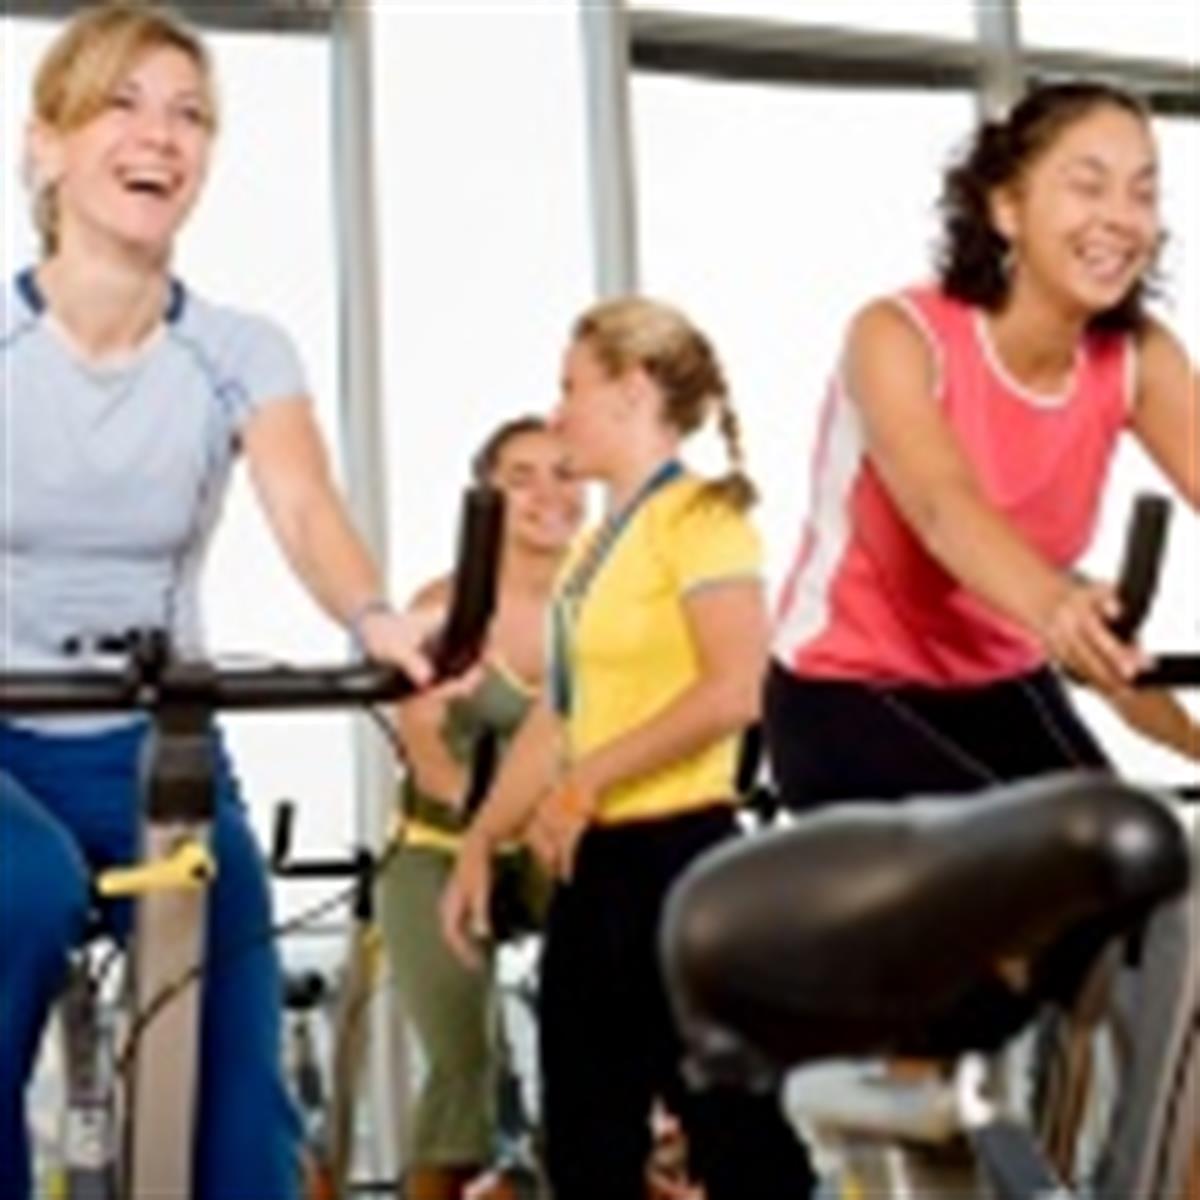 Tipos de ejercicio: actividades aeróbicas y anaeróbicas